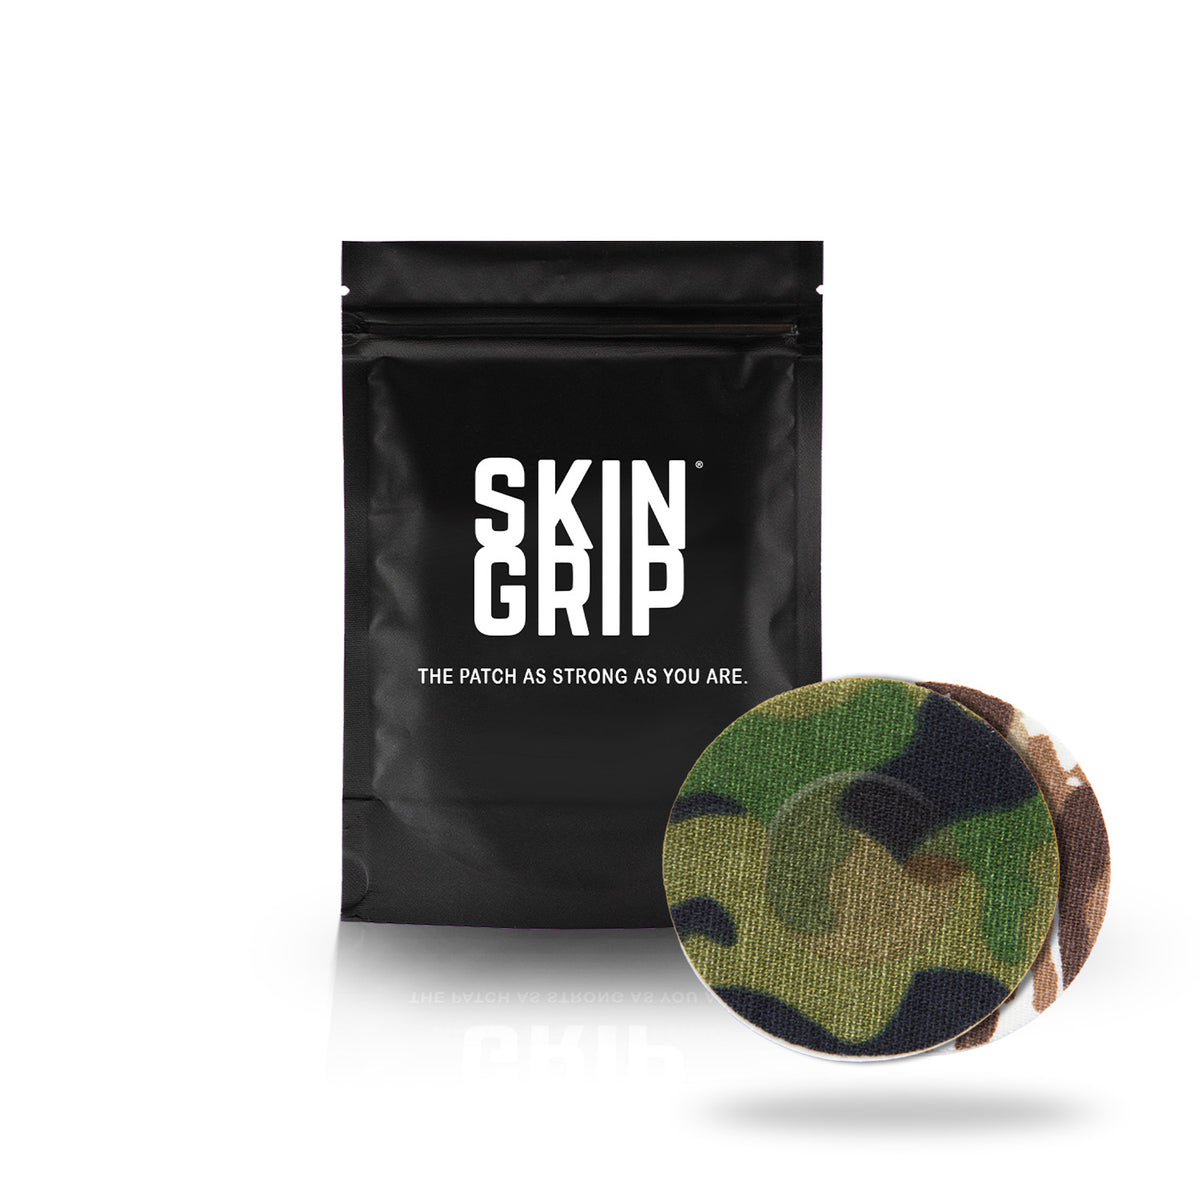 Skin Grip Original - Dexcom G7 Adhesive Patches